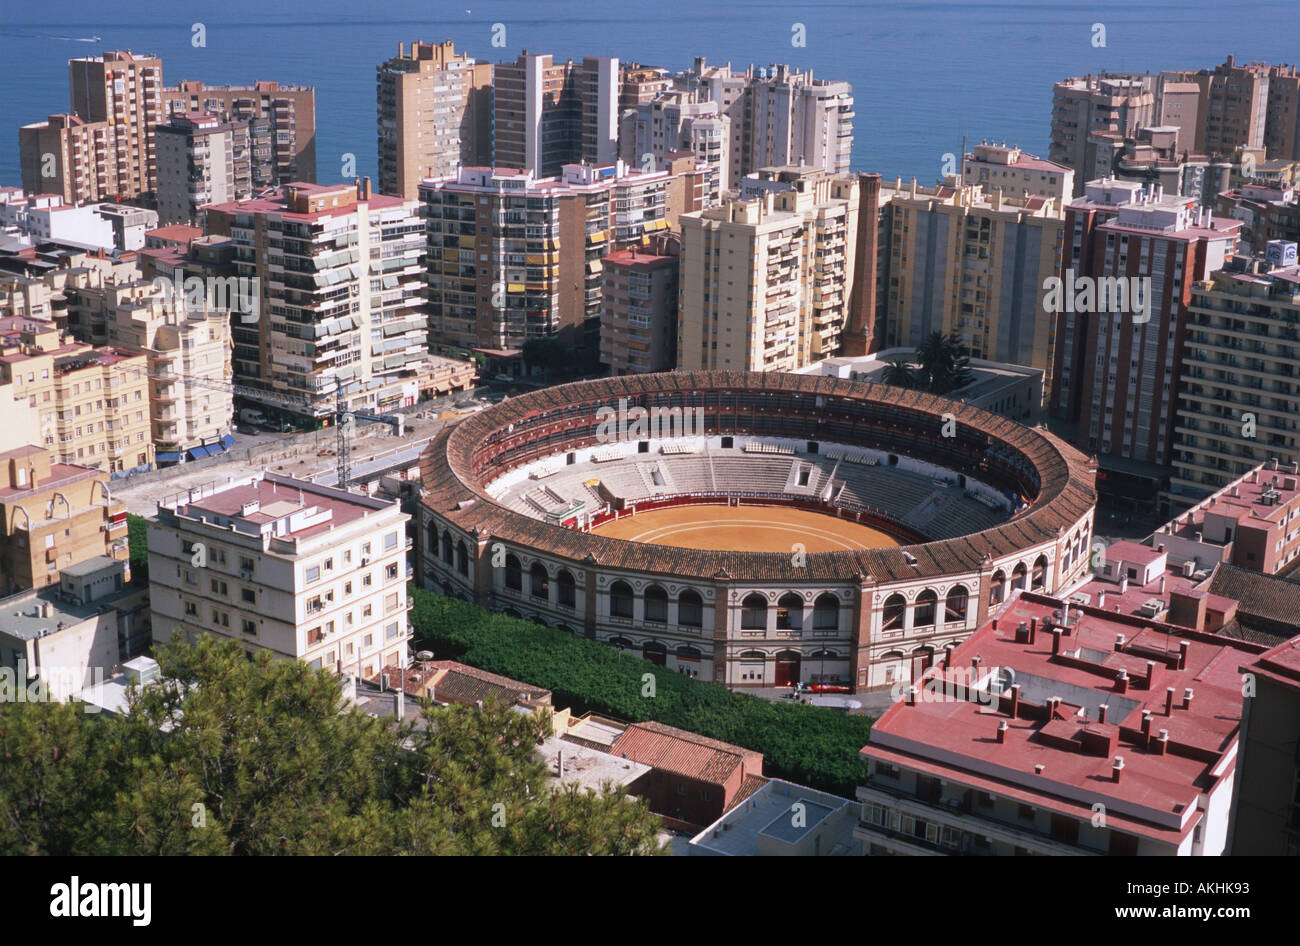 La plaza de toros, la Plaza de La Malagueta, en Málaga, España tomada desde un mirador elevado Foto de stock